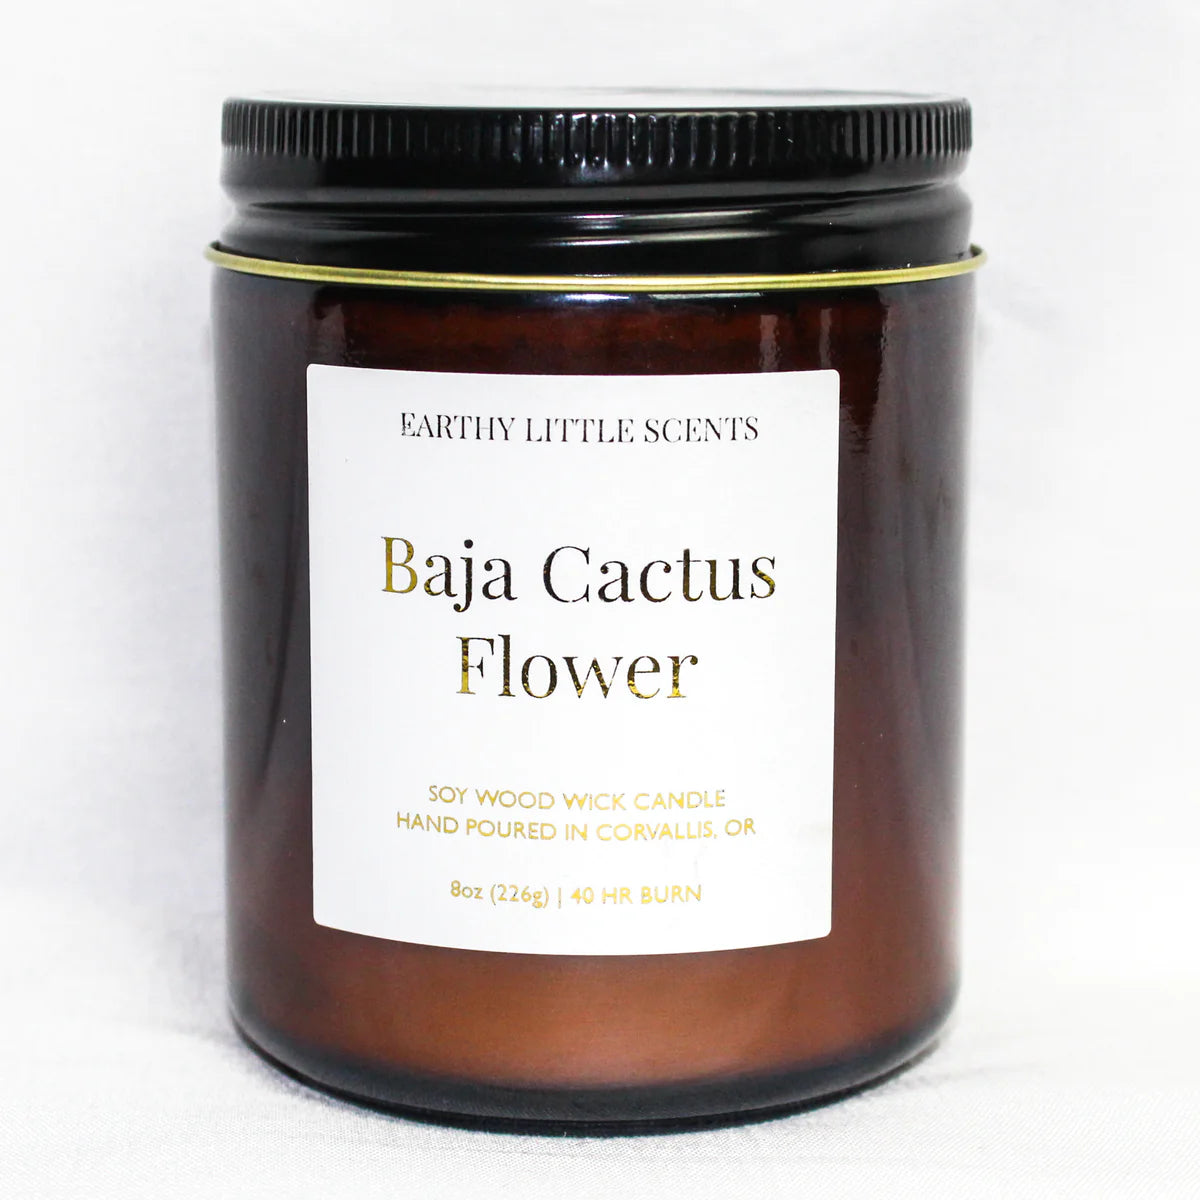 Baja Cactus Flower